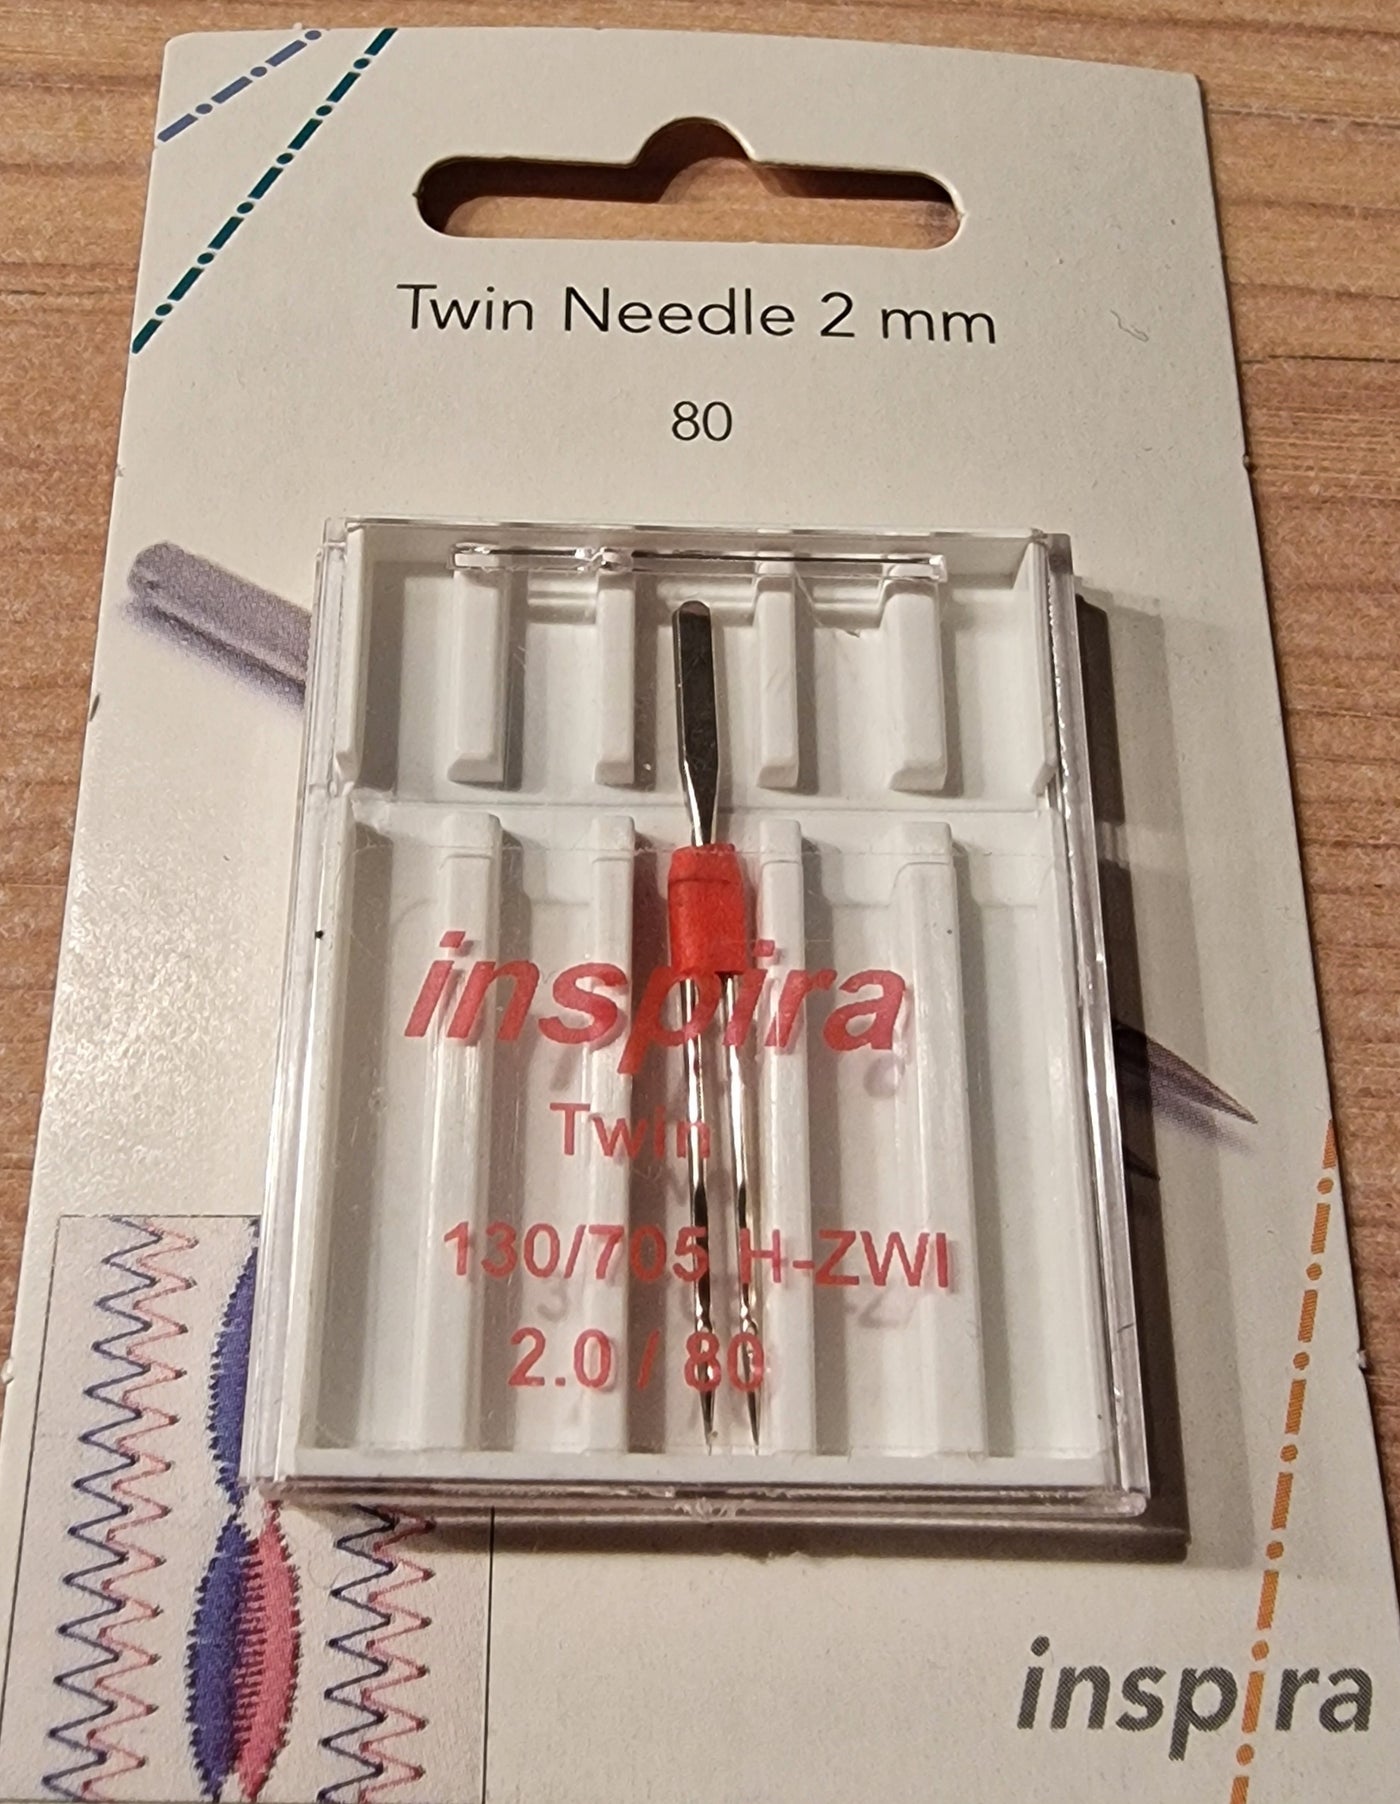 Twin Needle 2mm, 80